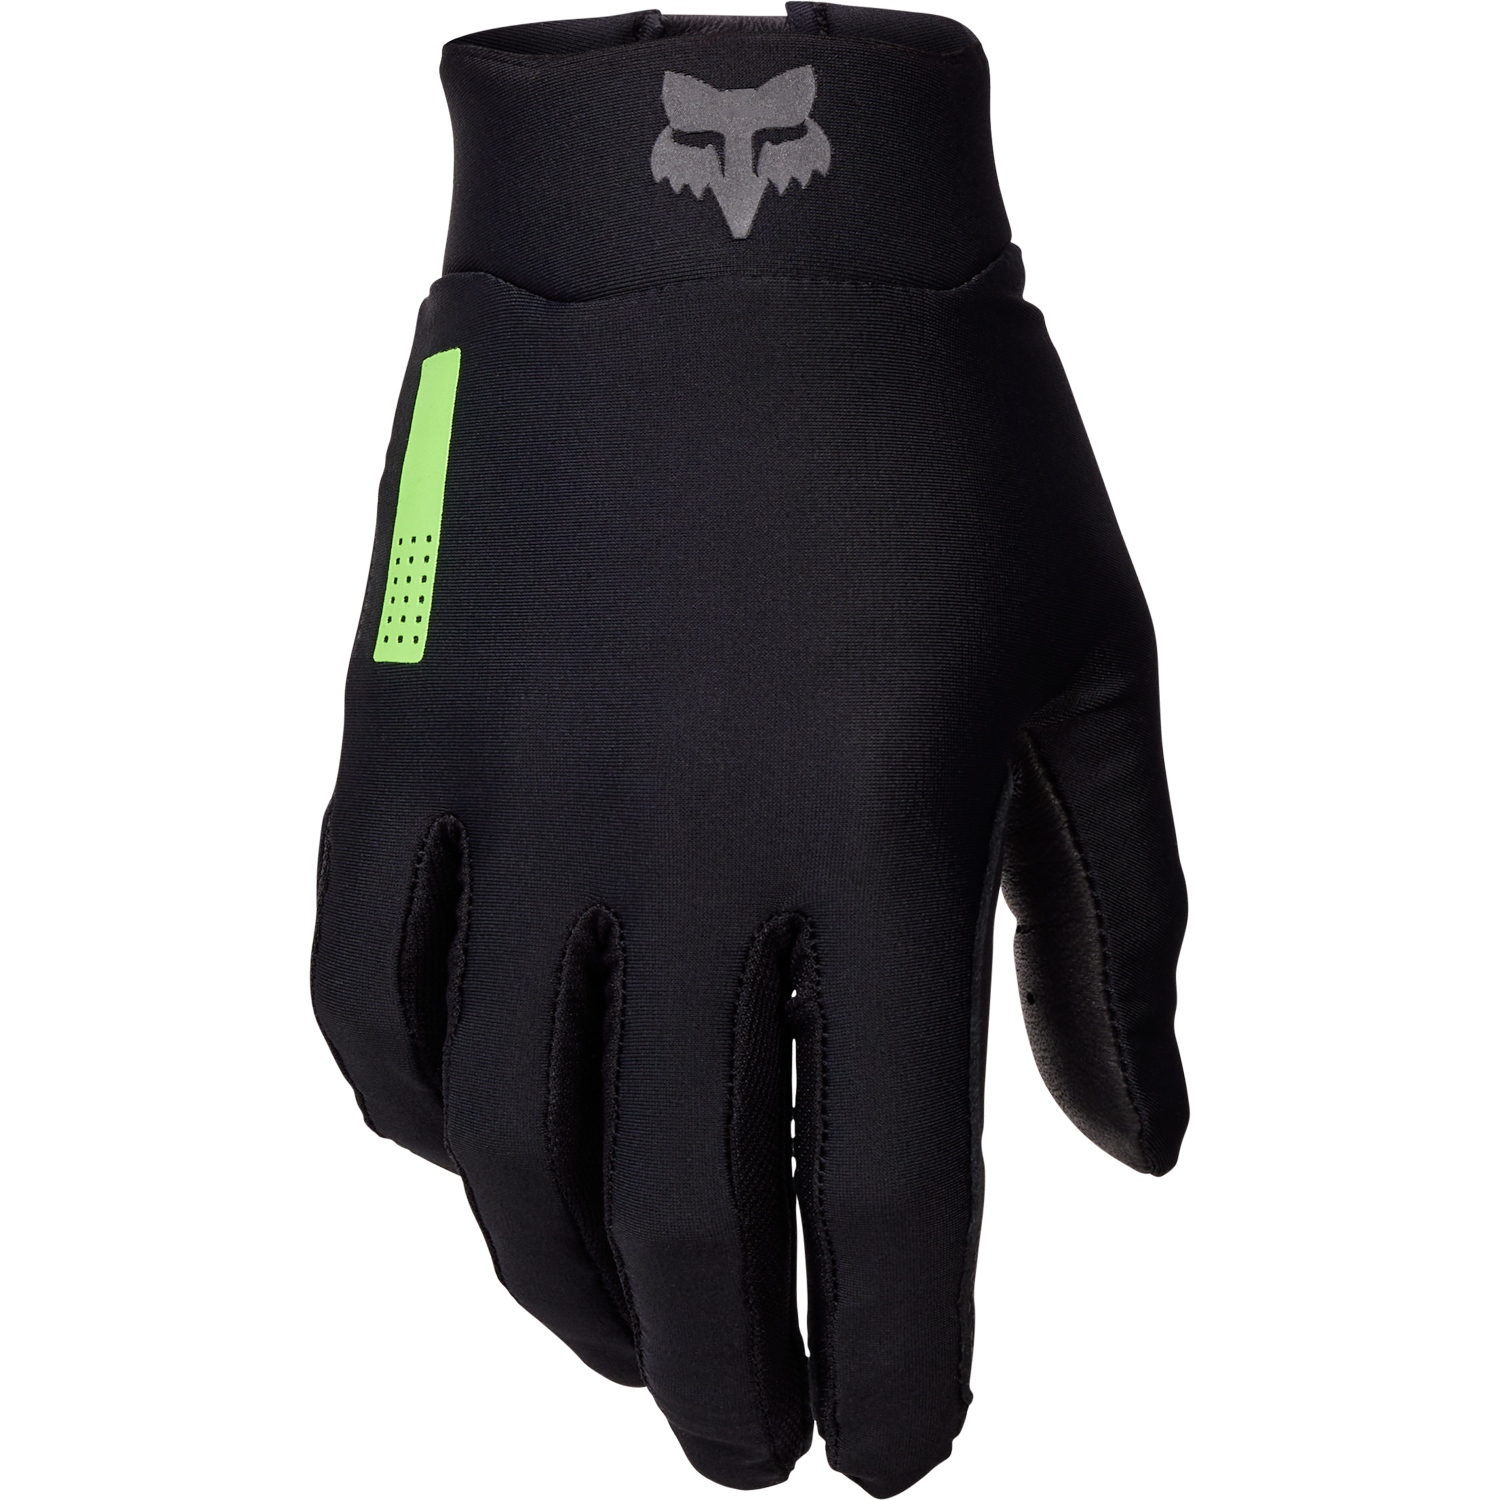 Produktbild von FOX Flexair MTB Handschuhe Herren - 50 Years Edition - schwarz